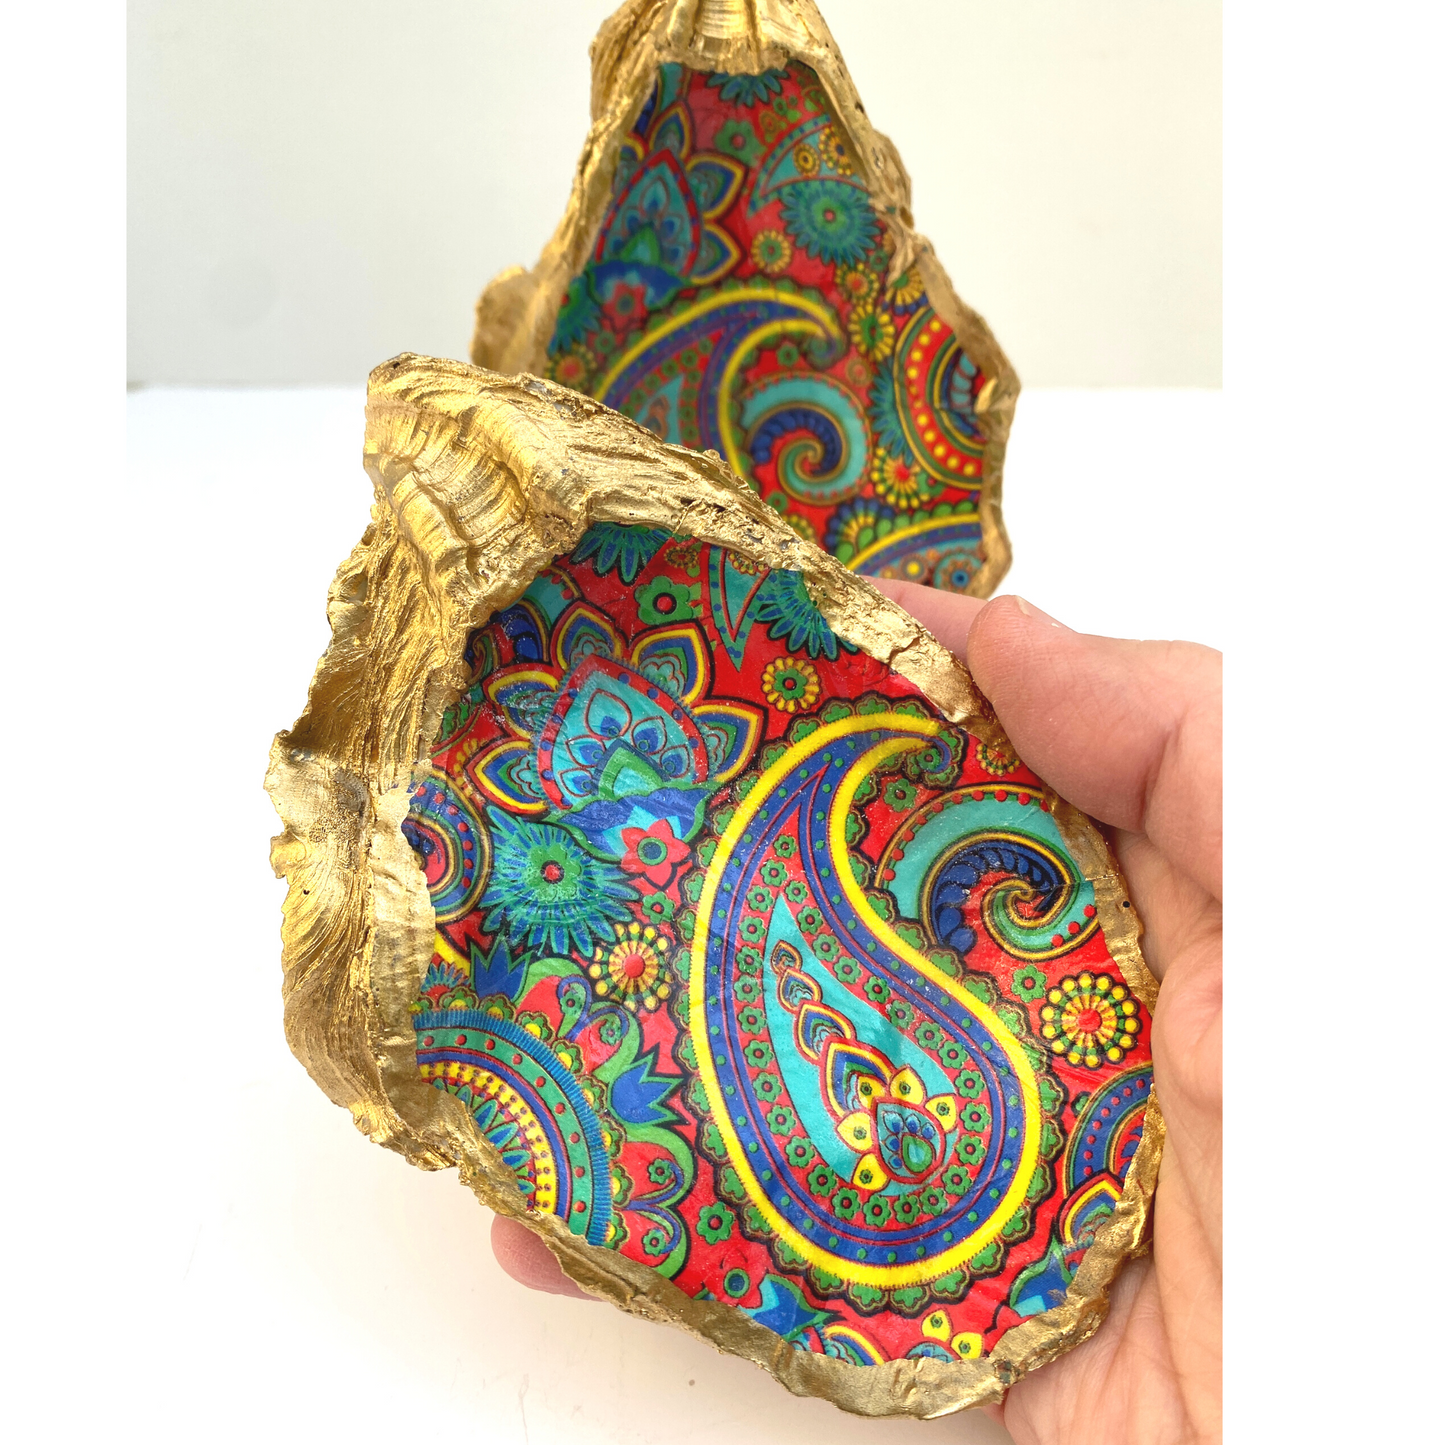 Paisley Oyster Shell Art, William Morris Inspired Design